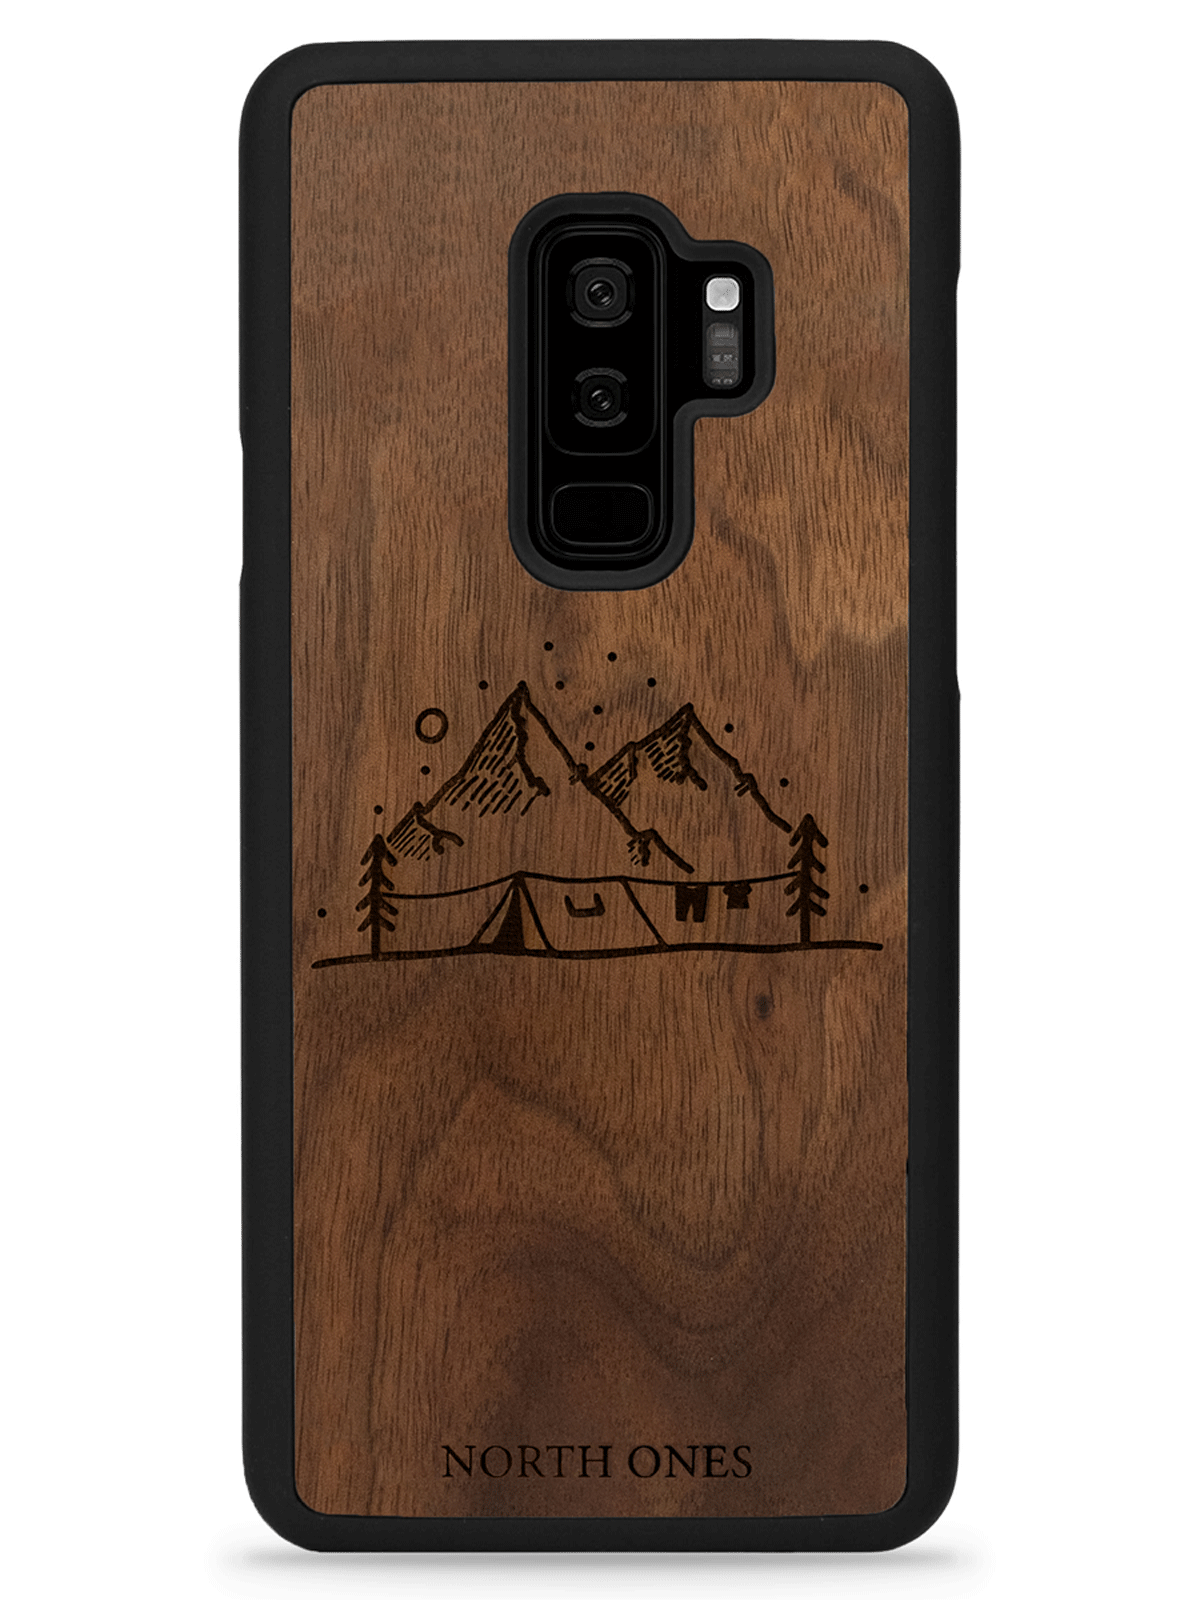 Mobilskal trä vildmark walnut inivildmarken edition Samsung galaxy S9+